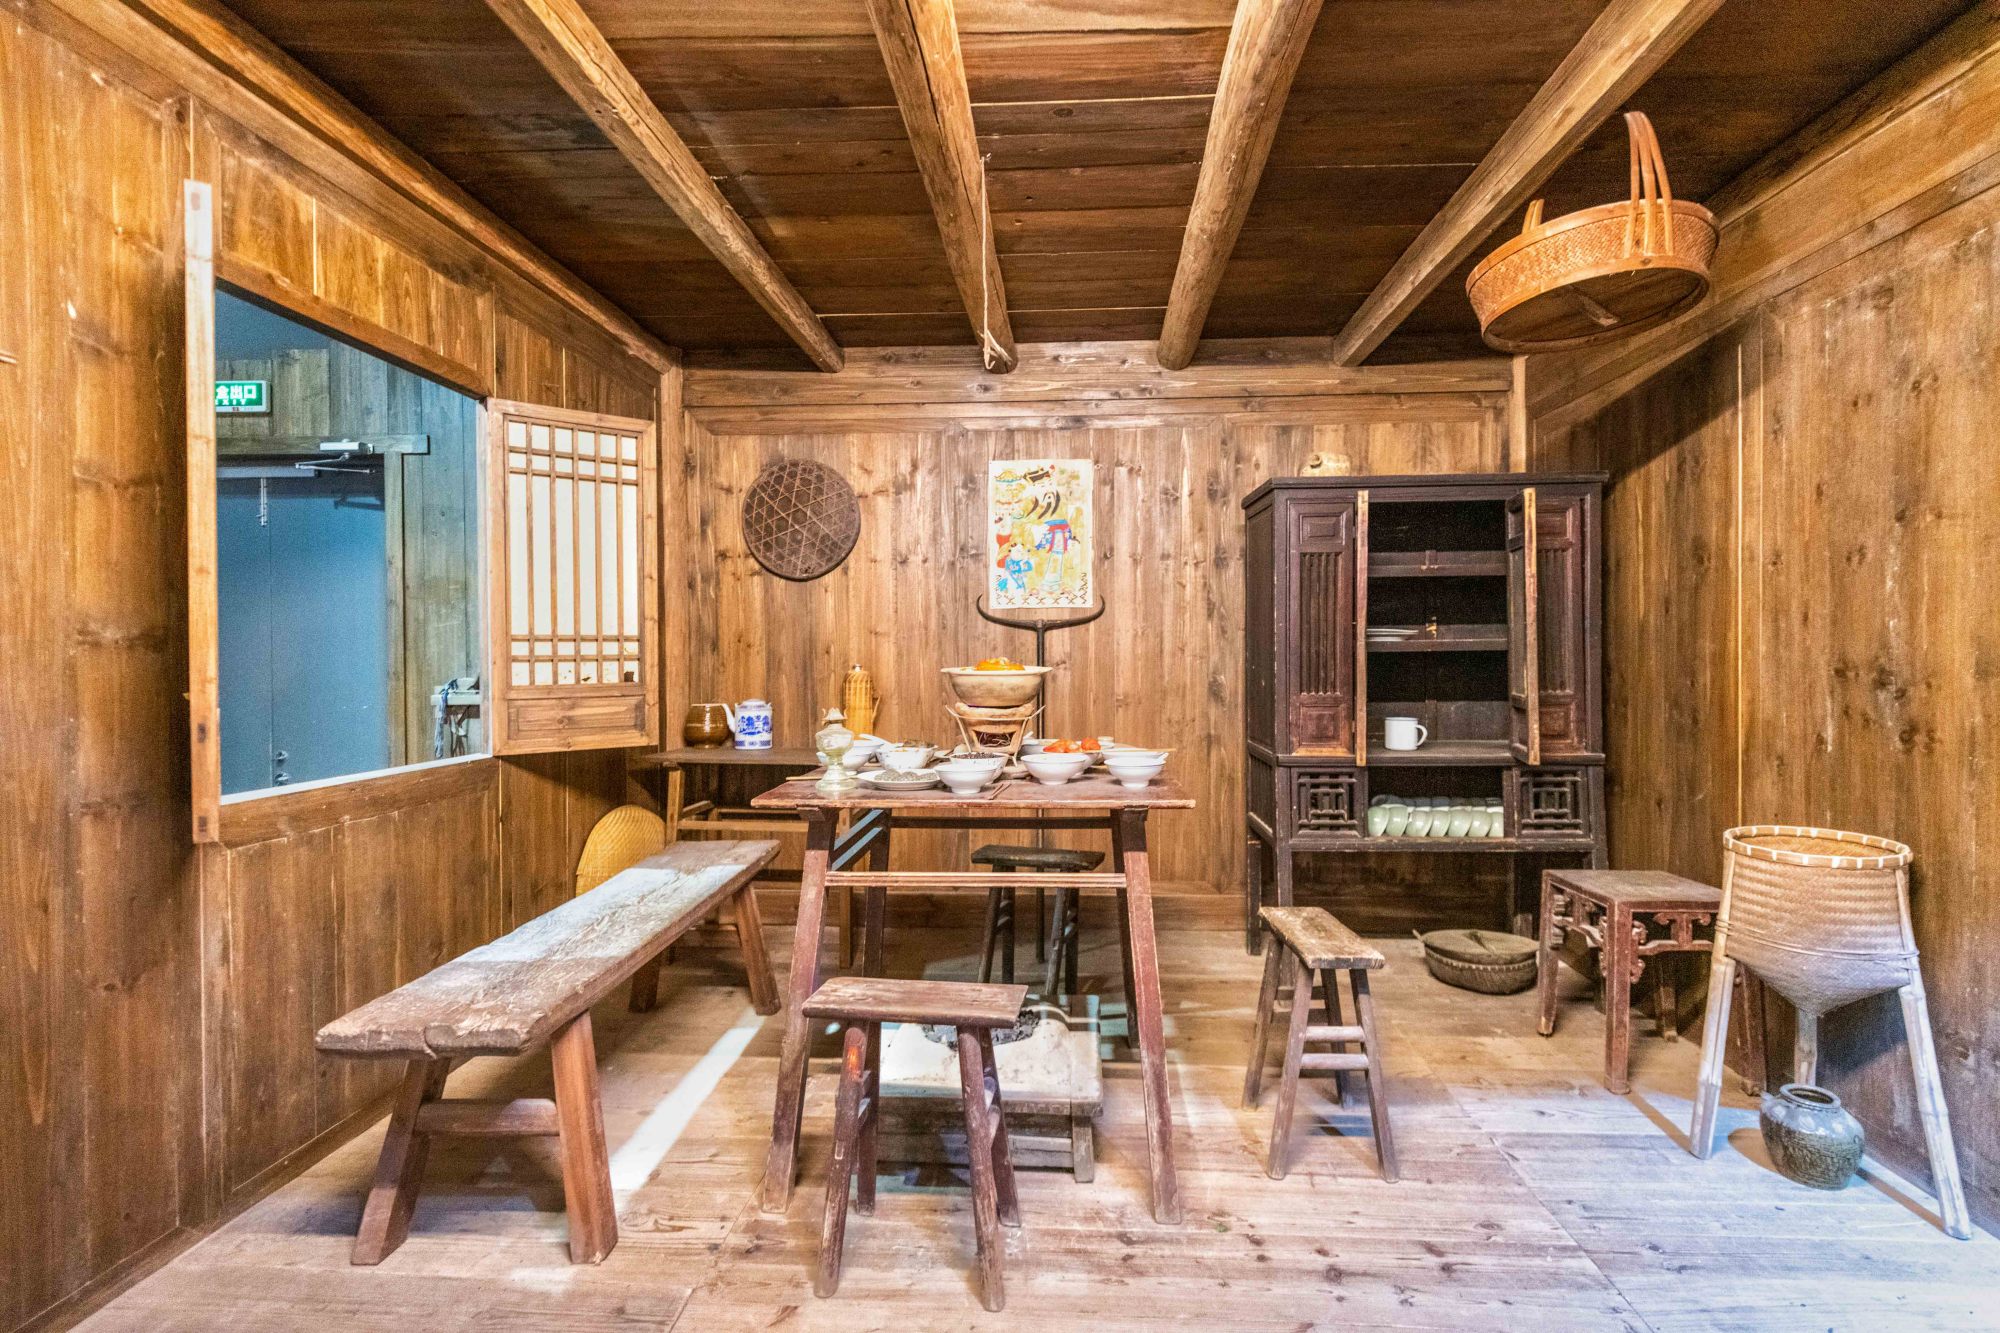 国内唯一的畲族自治县,当地博物馆能看到畲族传奇历史